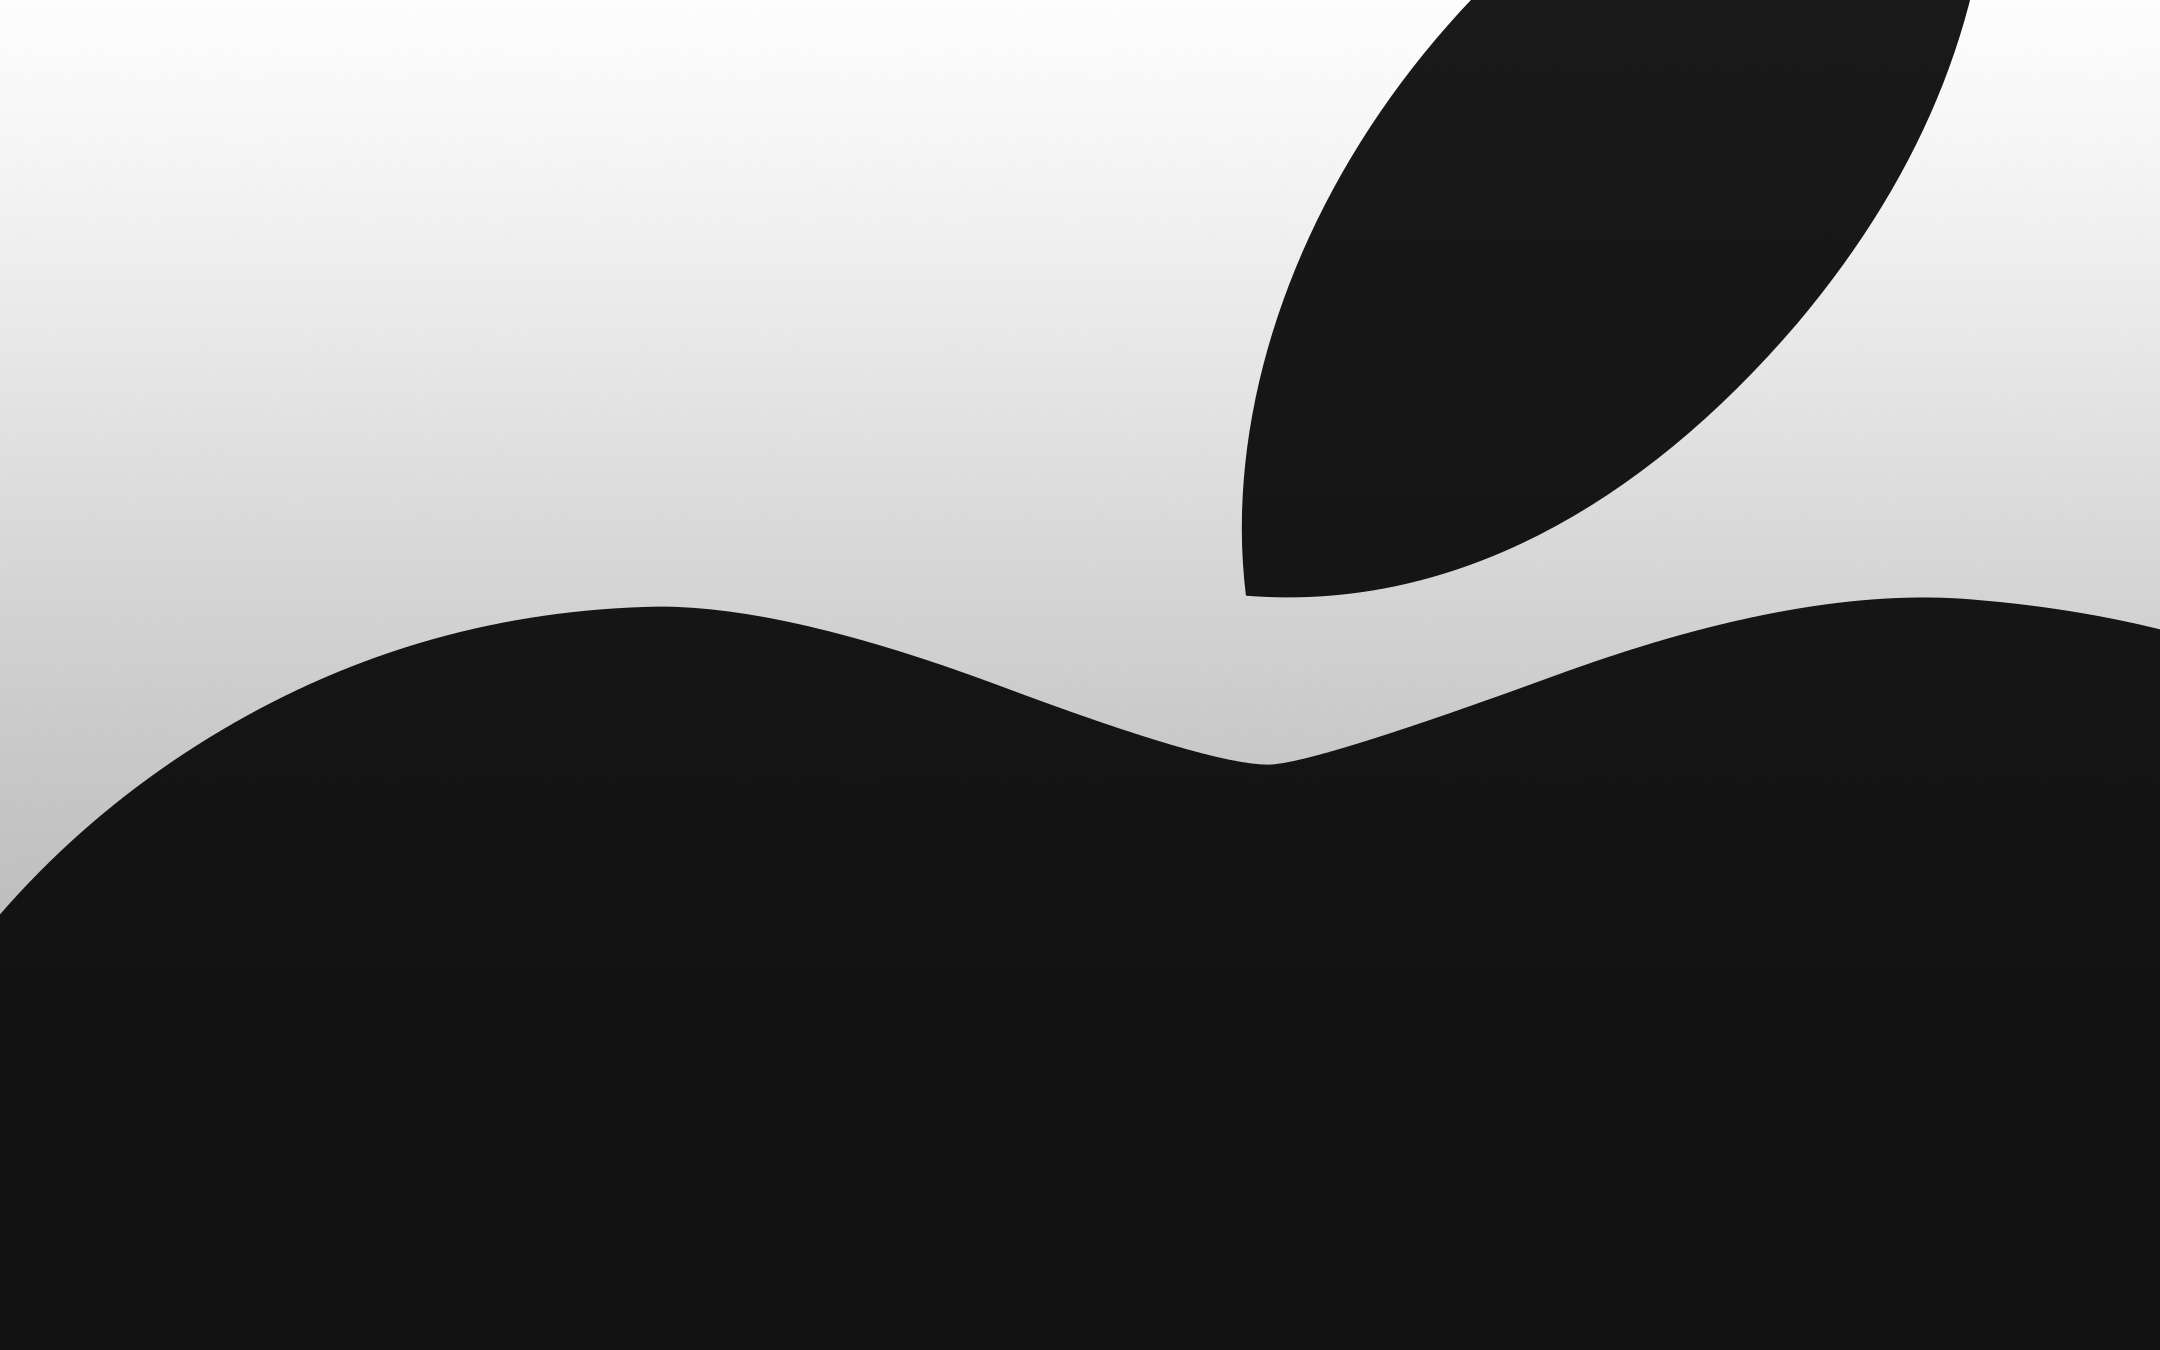 Apple, scoperta la talpa: era il design architect